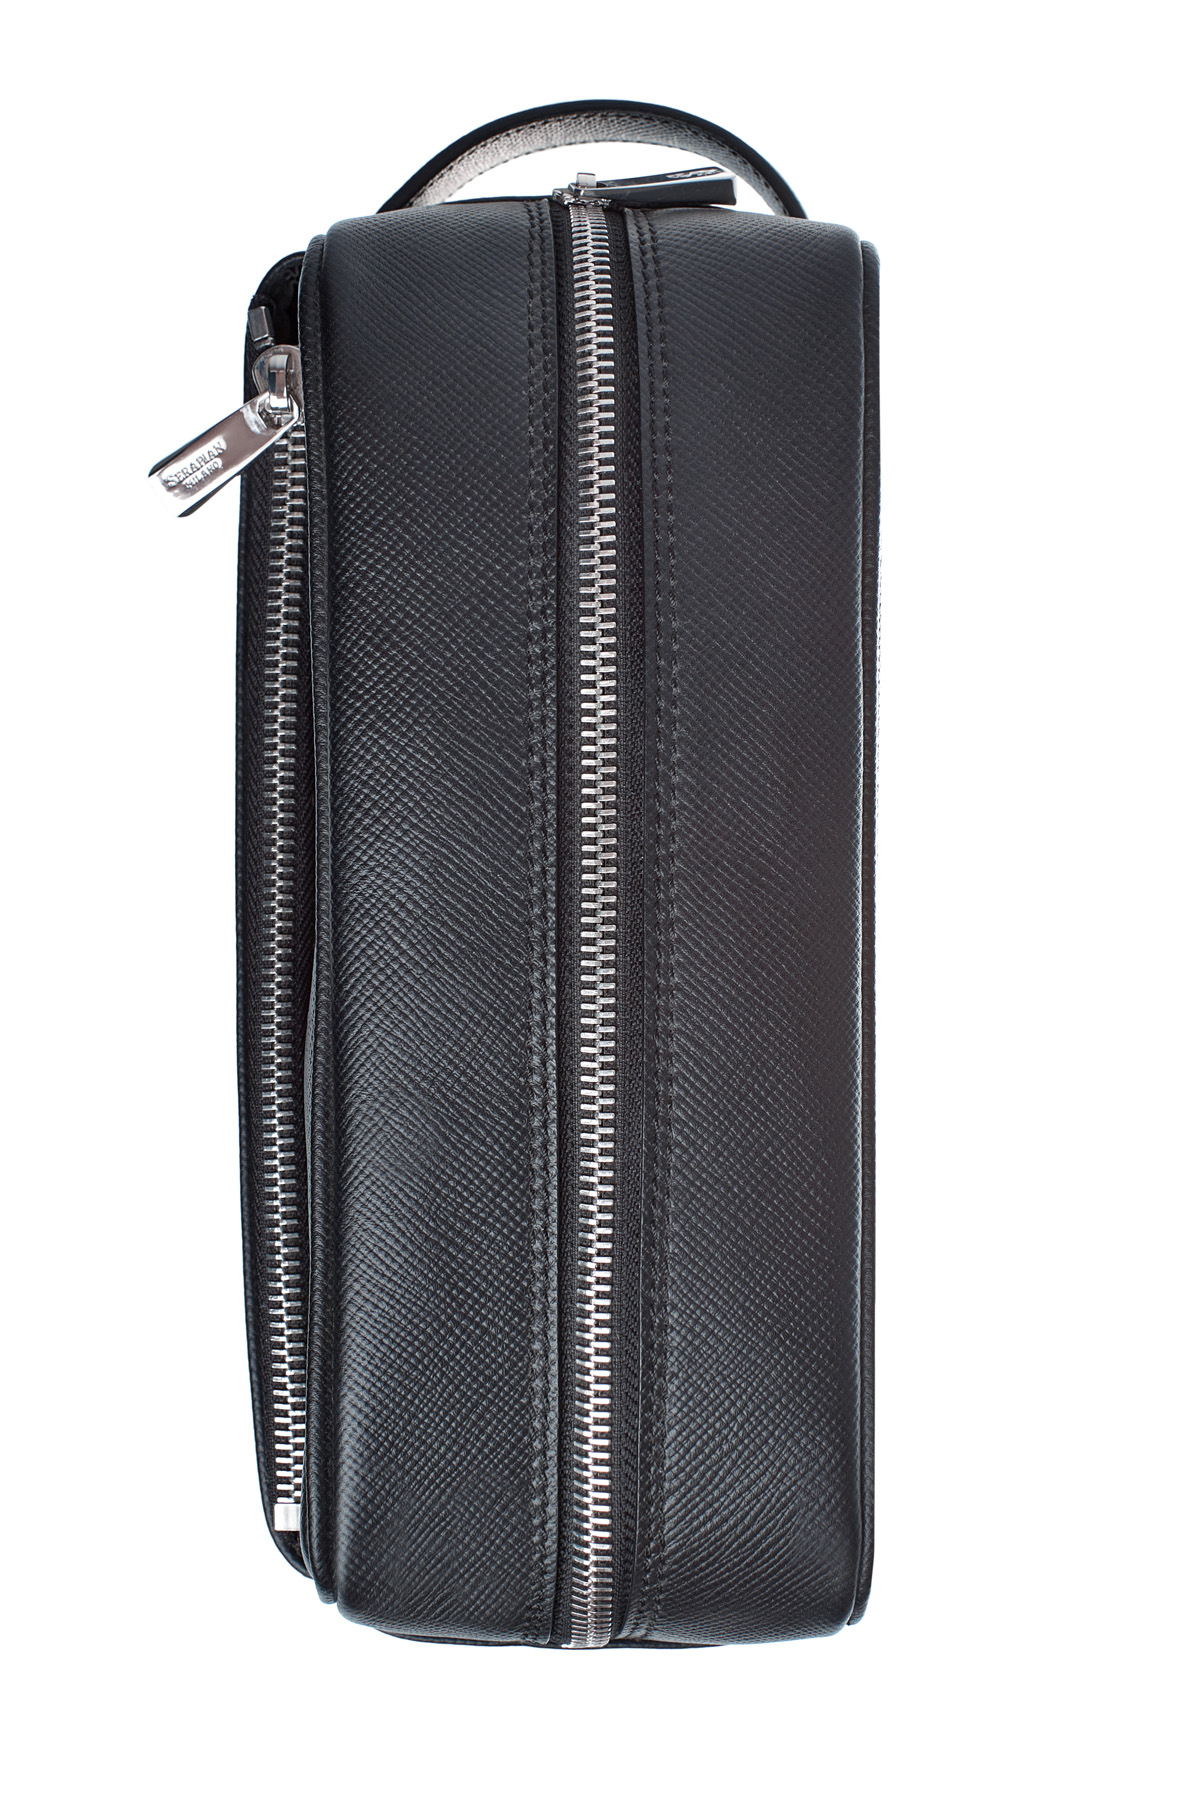 Кожаный несессер в классическом стиле с фирменным сафьяновым тиснением SERAPIAN, цвет черный, размер XS;S;M - фото 6